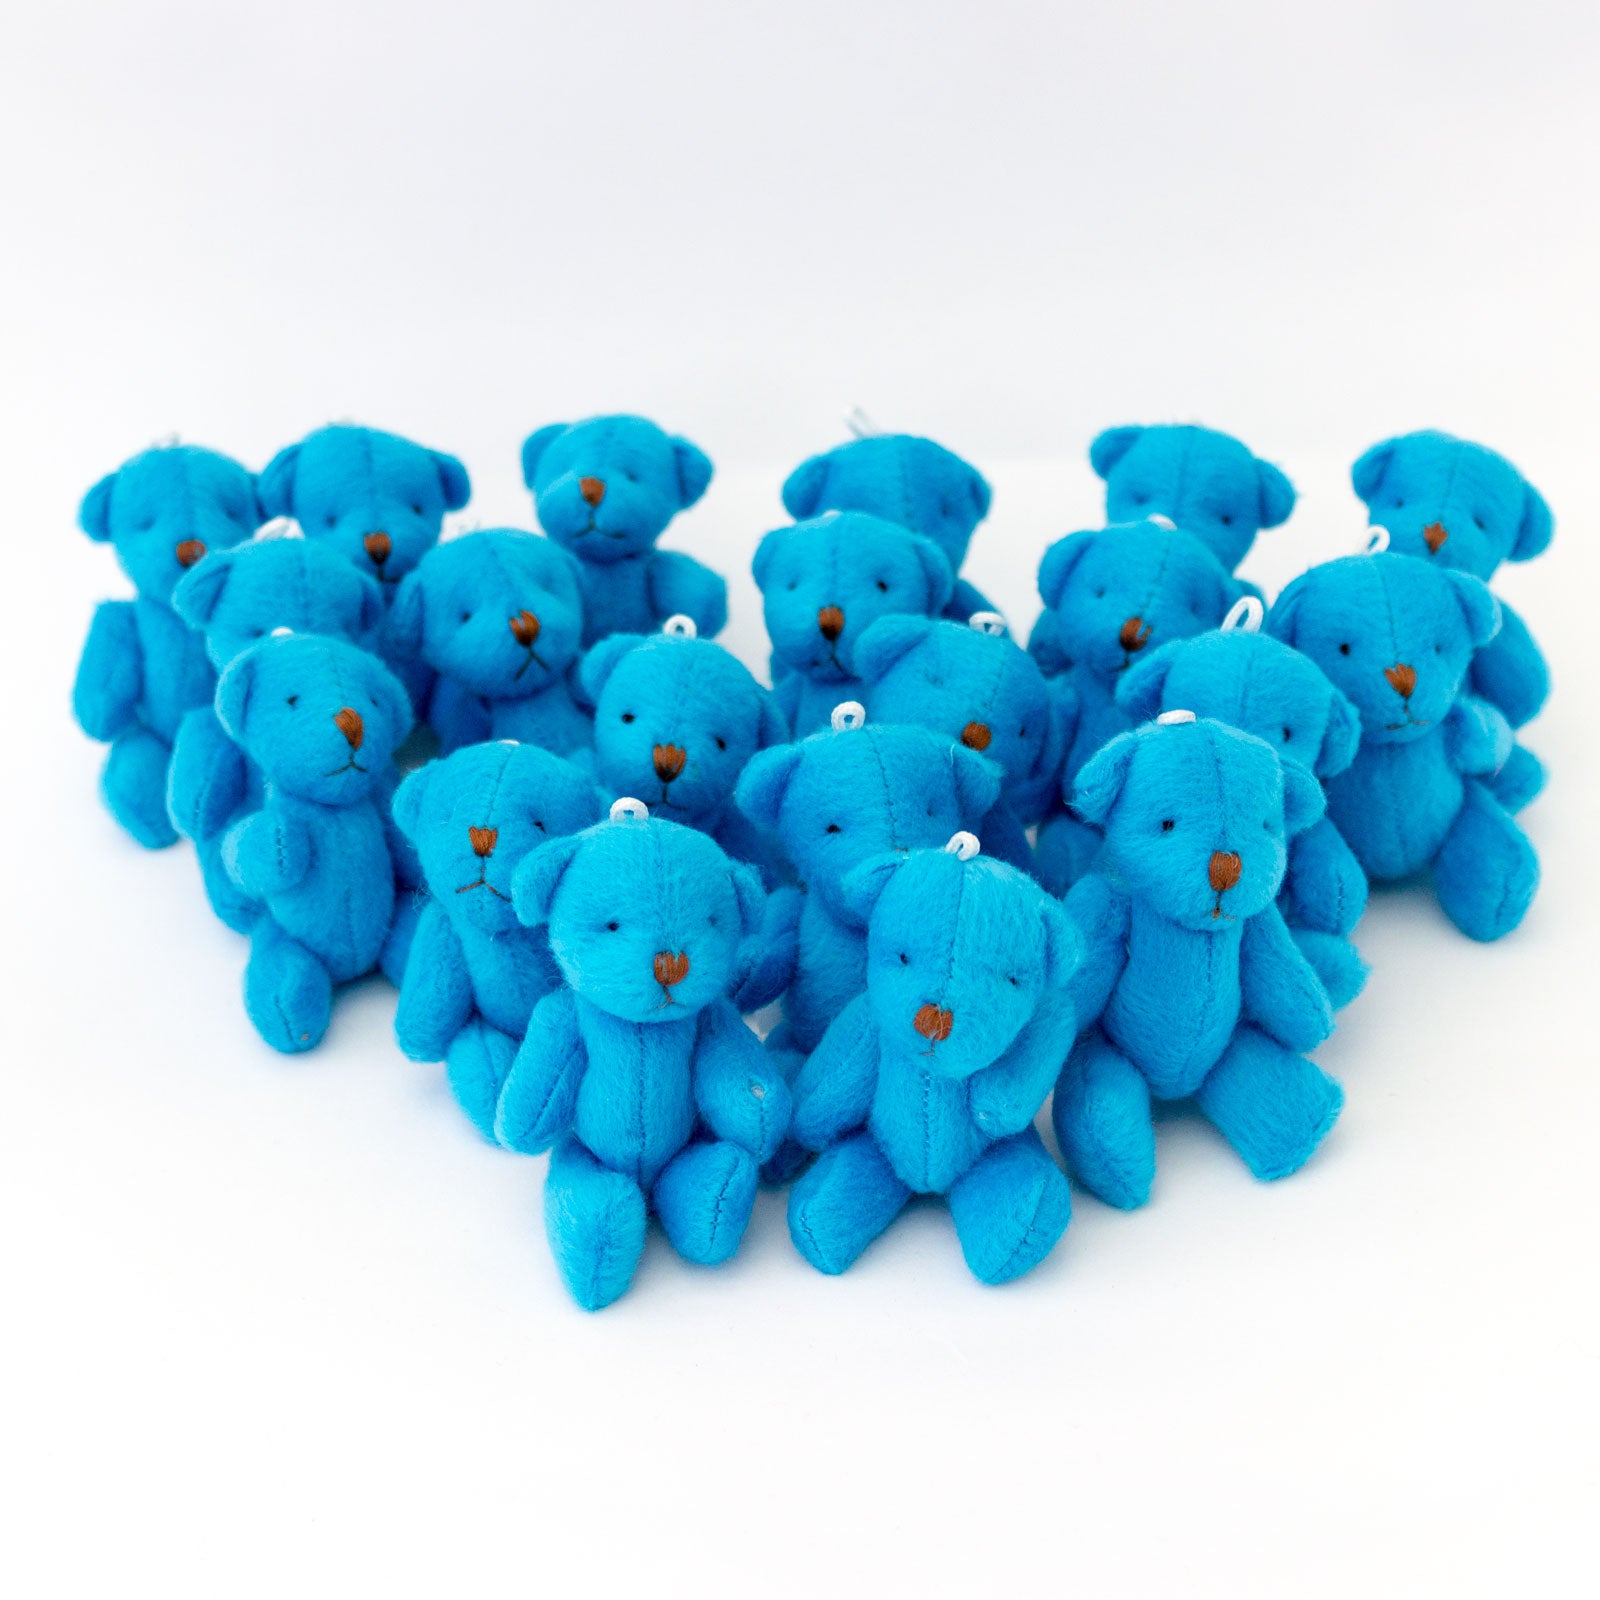 Small BLUE Teddy Bears X 75 - Cute Soft Adorable